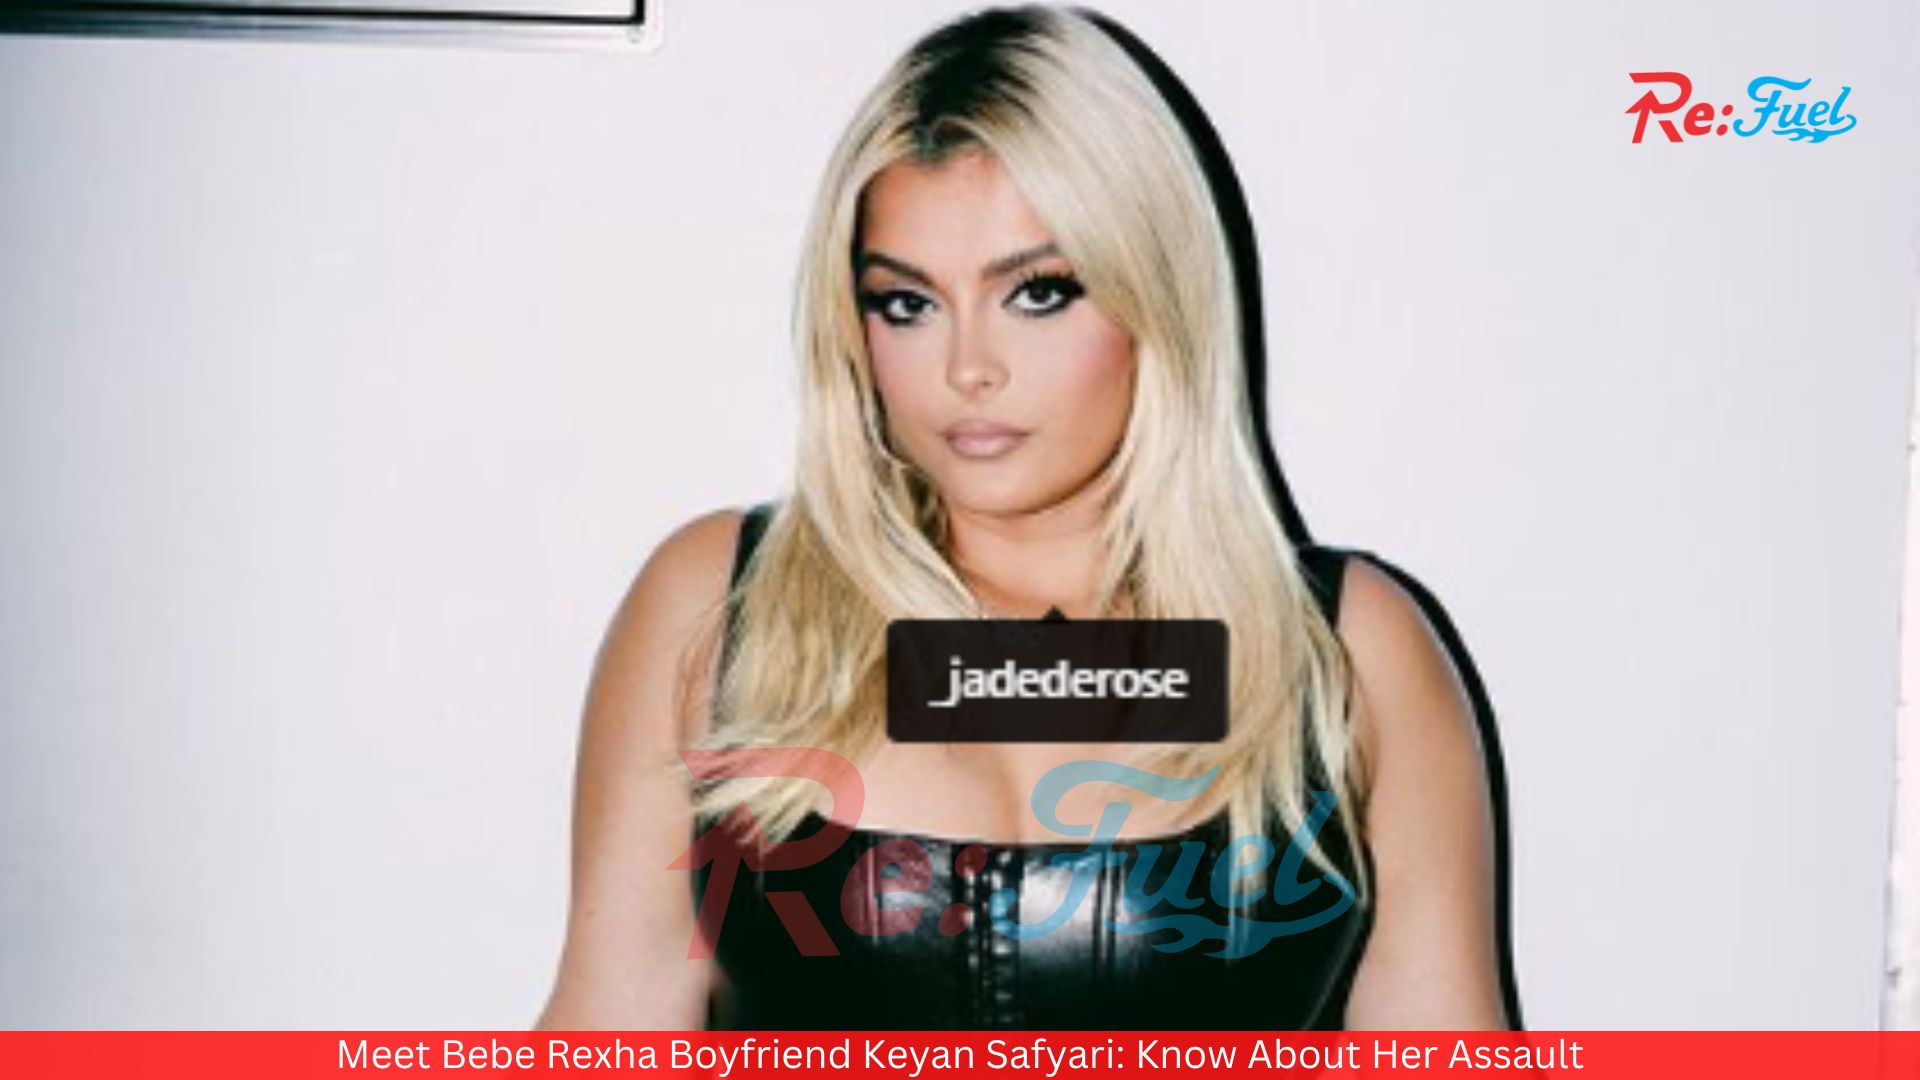 Meet Bebe Rexha Boyfriend Keyan Safyari: Know About Her Assault